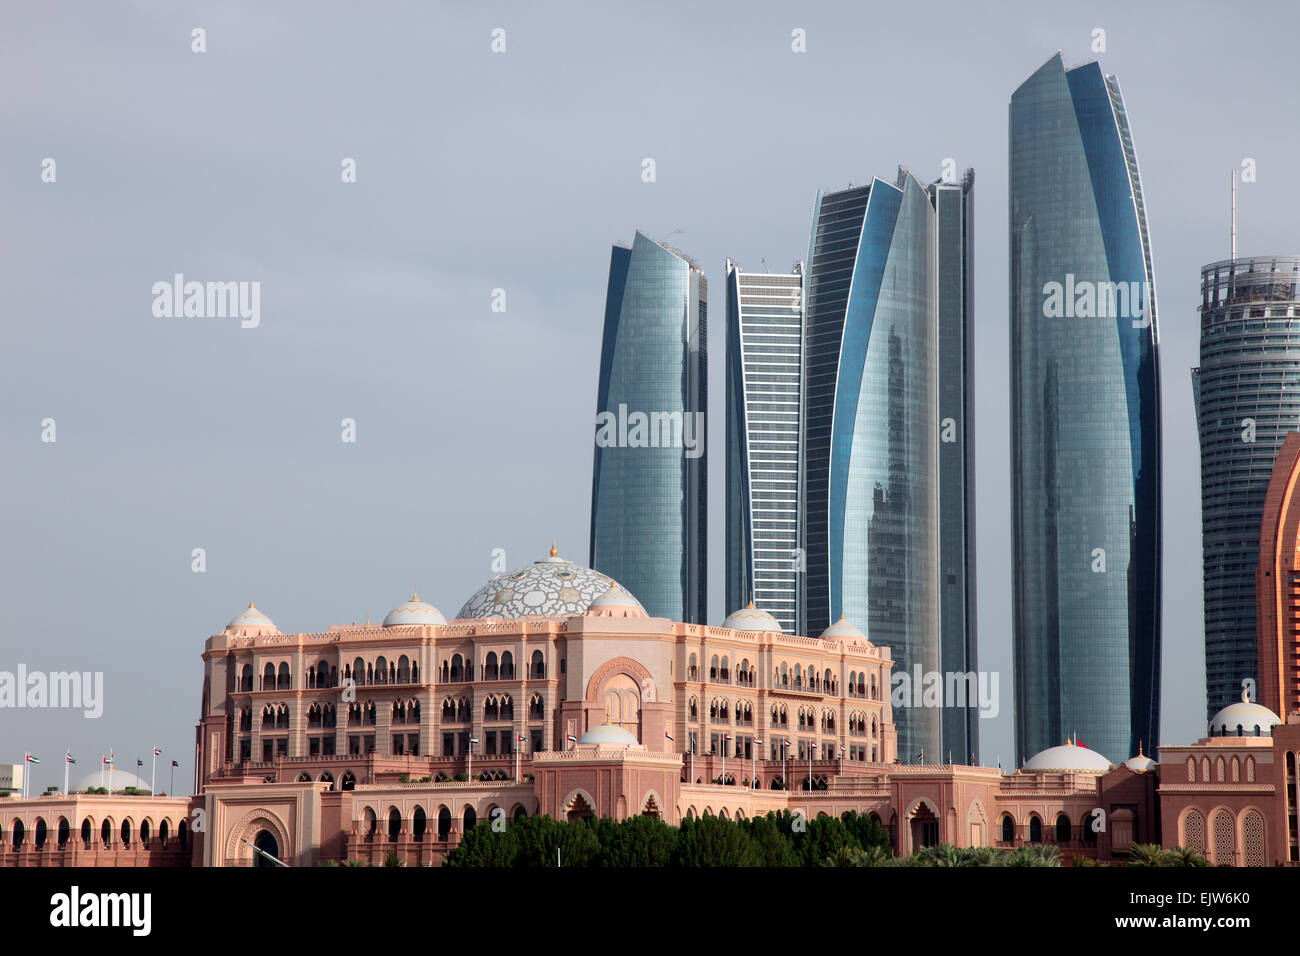 Emirates Palace Hotel and Etihad Towers Abu Dhabi Stock Photo